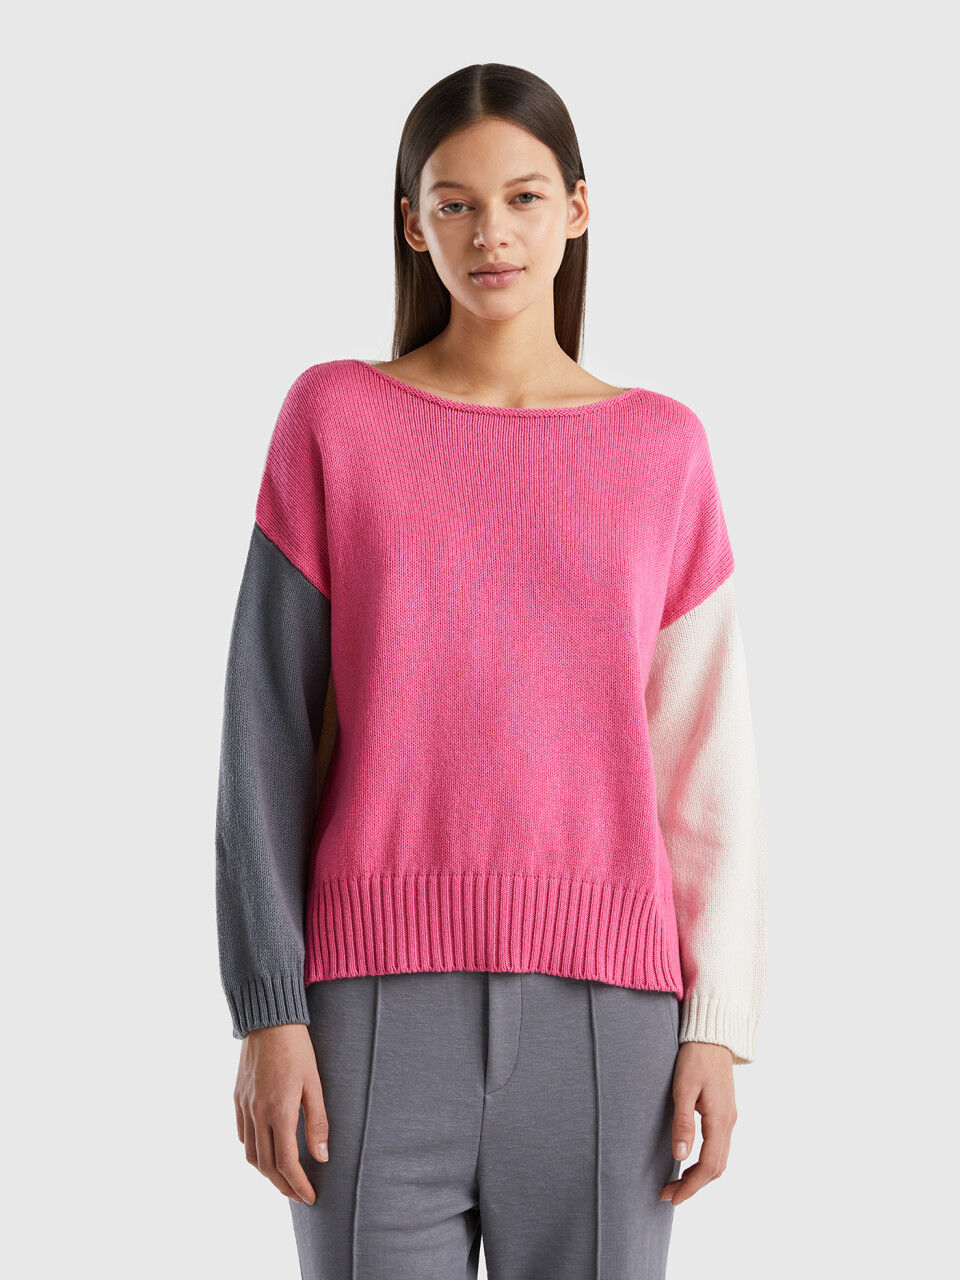 Pullover in einer Baumwollmischung mit langen Ärmeln